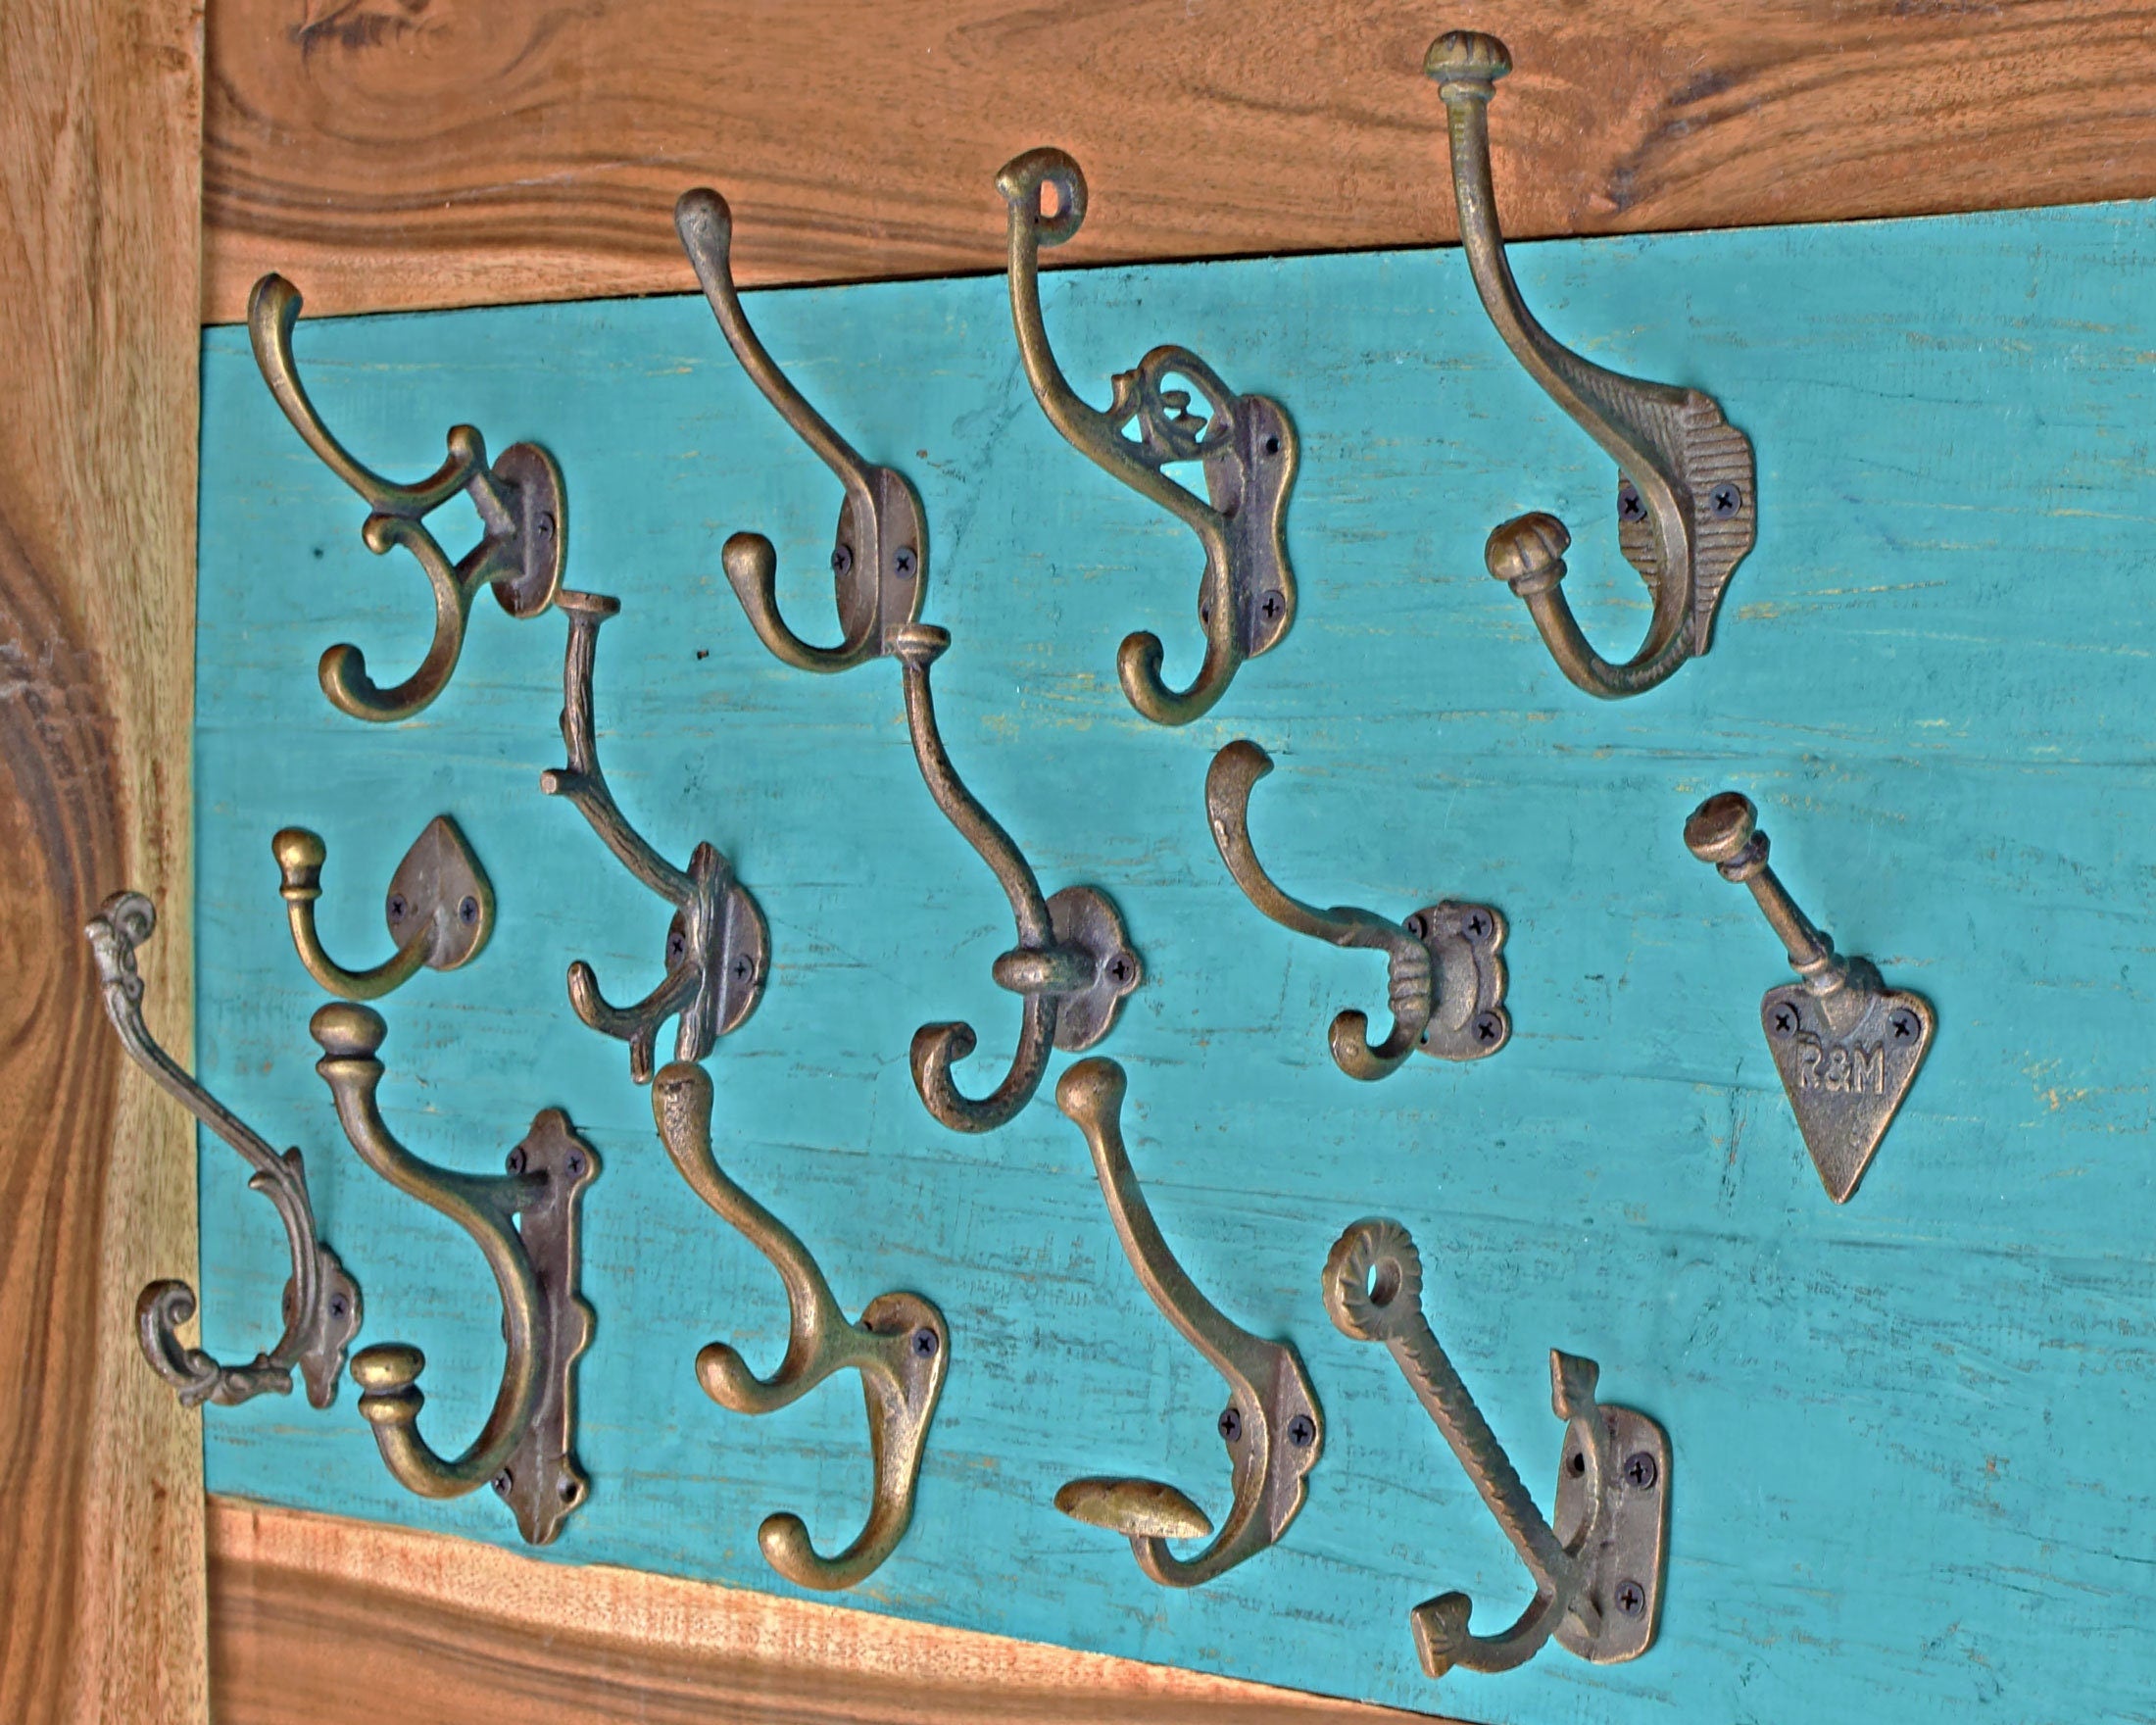 Antique Decorative Wall Hooks, 2 Pieces Vintage Style Cast Iron